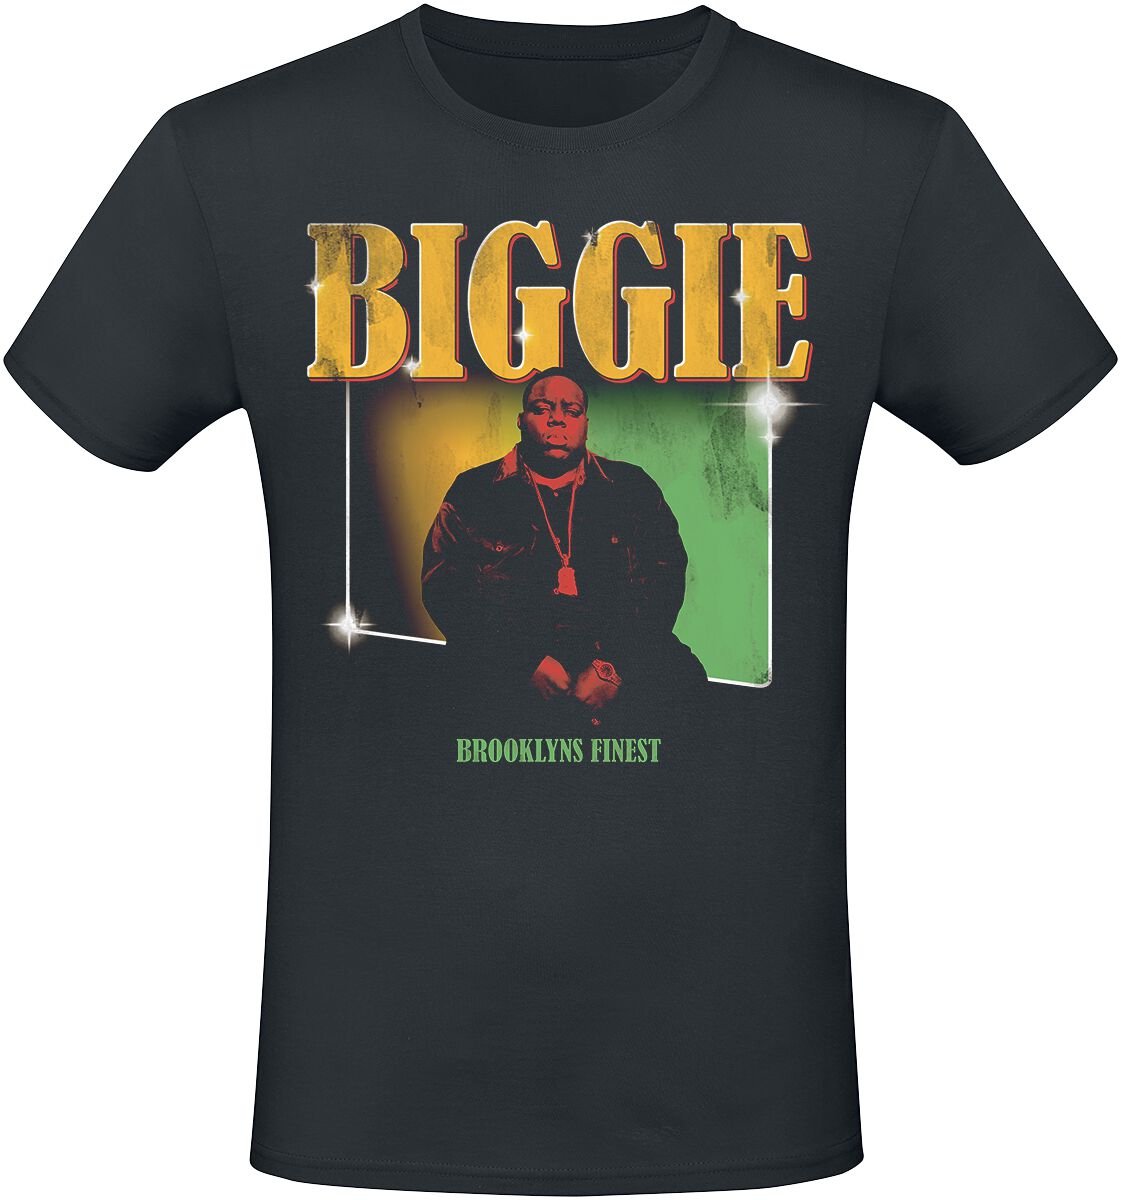 Notorious B.I.G. T-Shirt - Finest - S bis XXL - für Männer - Größe M - schwarz  - Lizenziertes Merchandise!